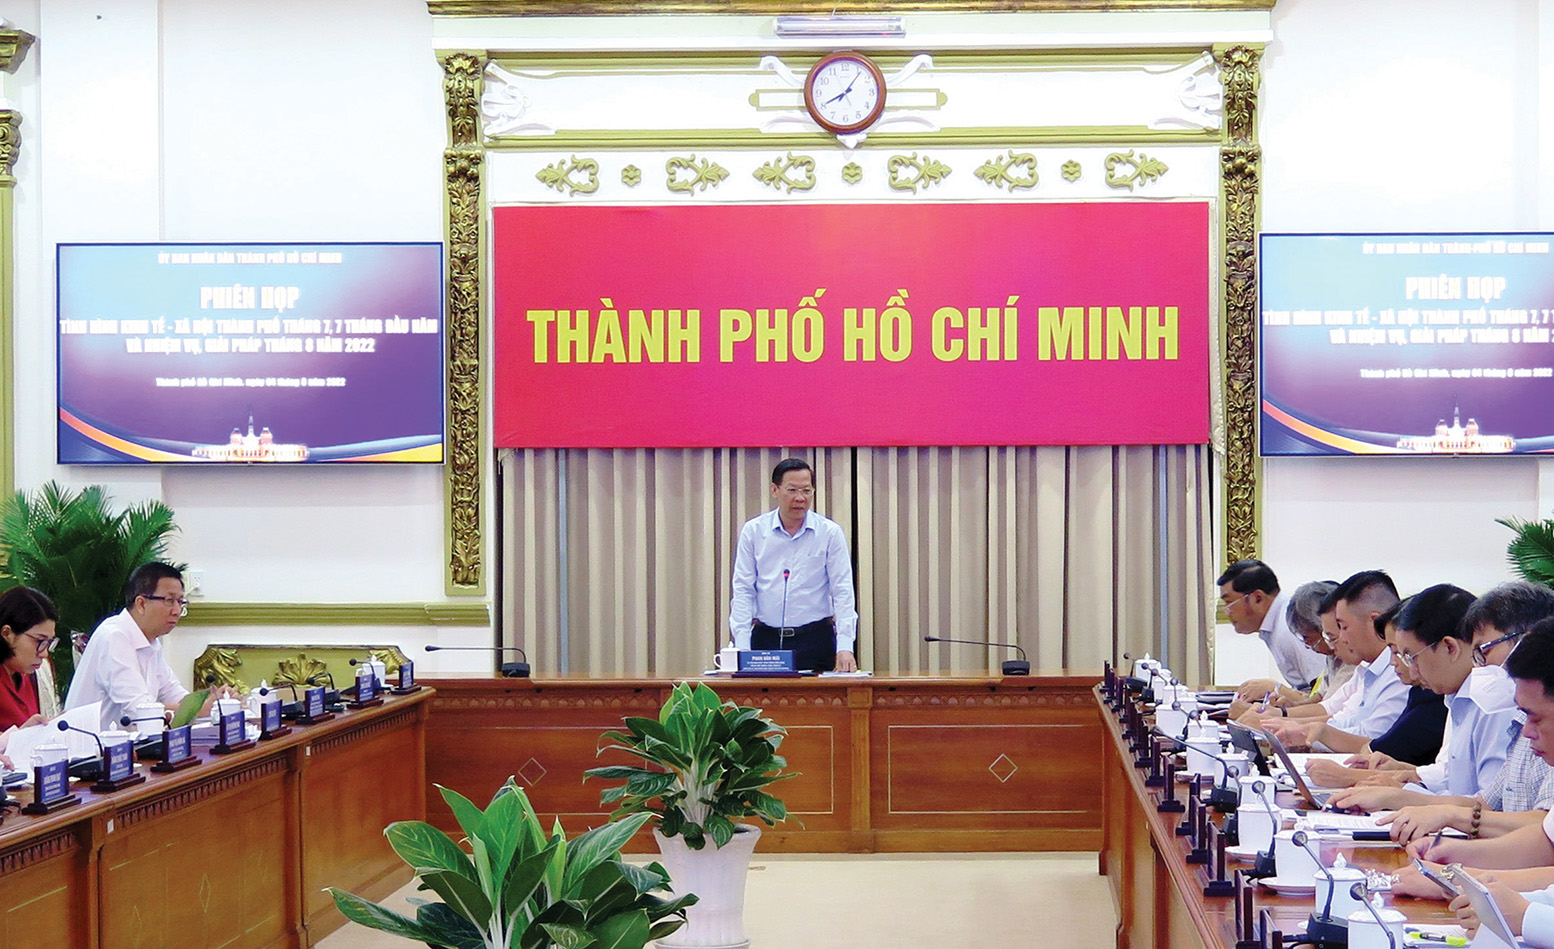 Đồng chí Phan Văn Mãi - Chủ tịch UBND TP. Hồ Chí Minh chủ trì phiên họp về tình hình hình kinh tế - xã hội tháng 7 và 7 tháng đầu năm 2022.